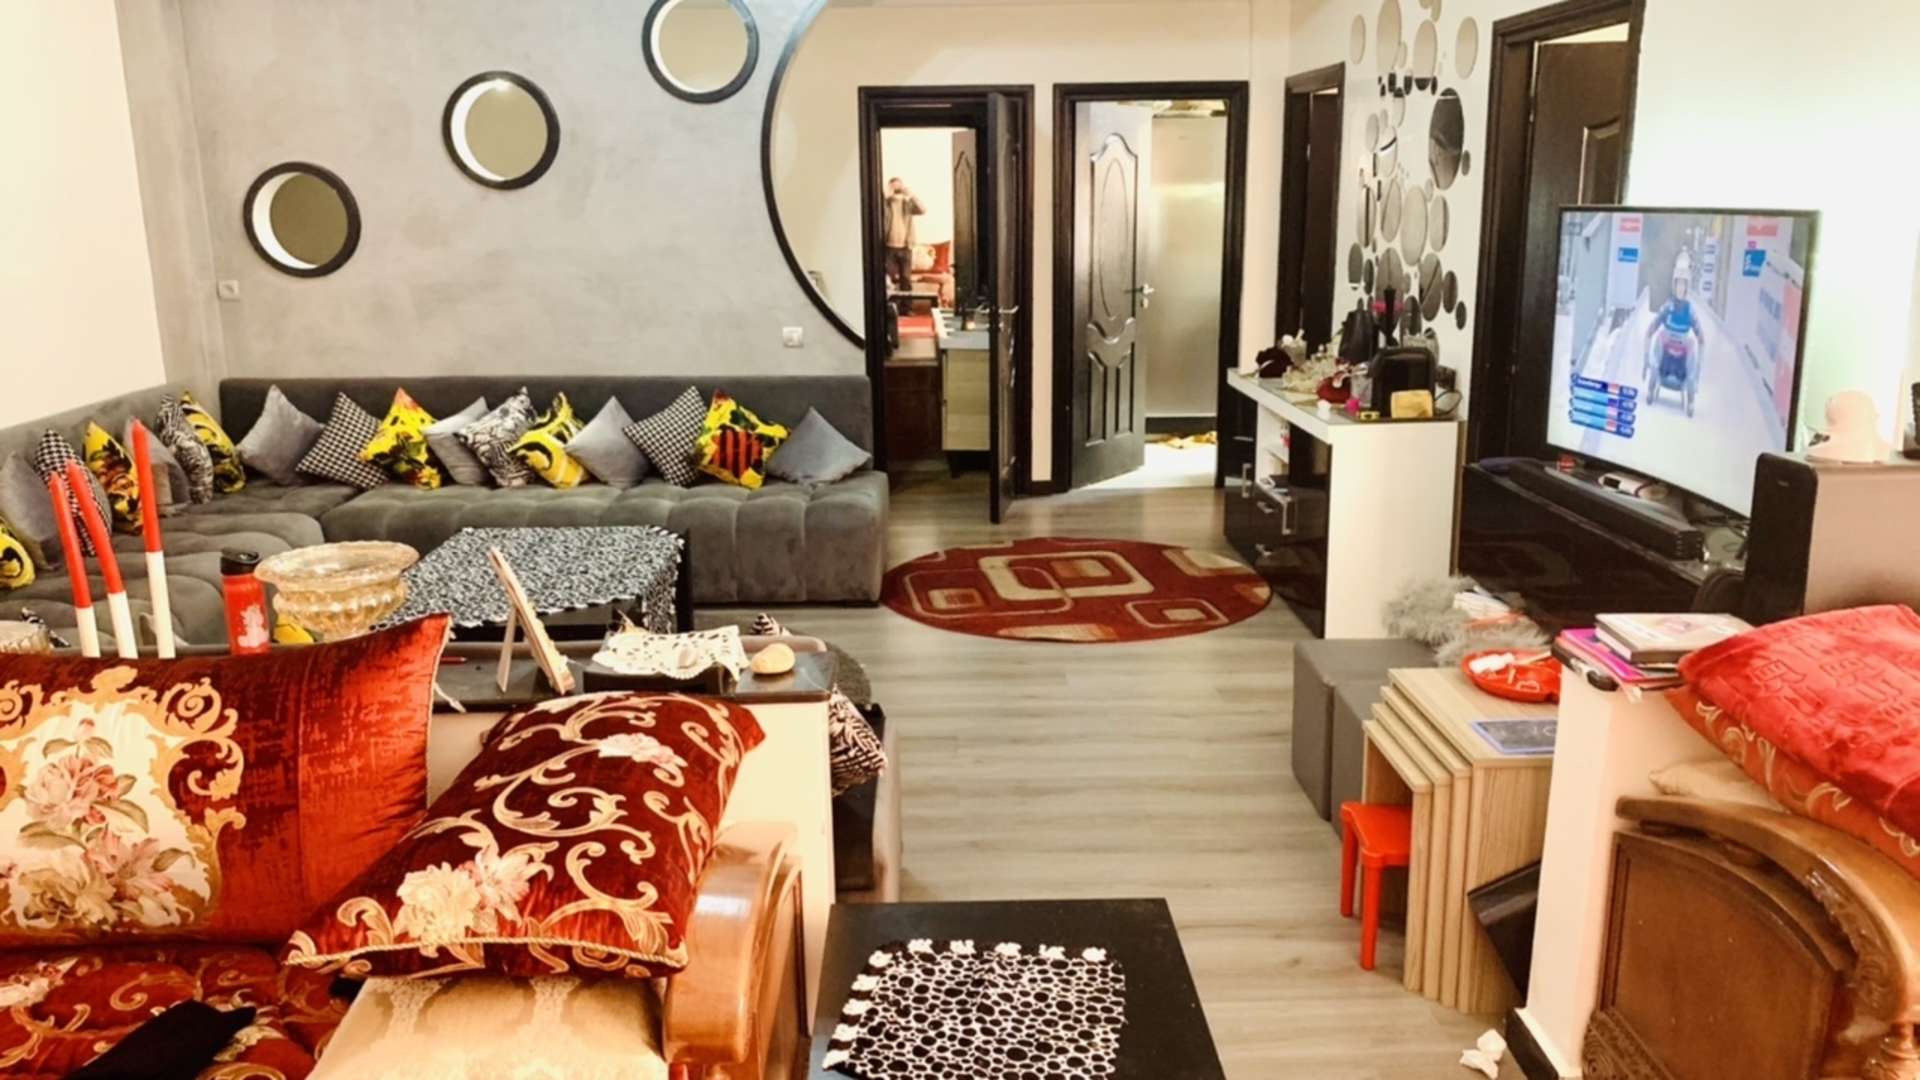 Vente,Appartement,Appartement double salon 2ch à vendre près des jardins de Majorelles à Marrakech ,Marrakech,Majorelles